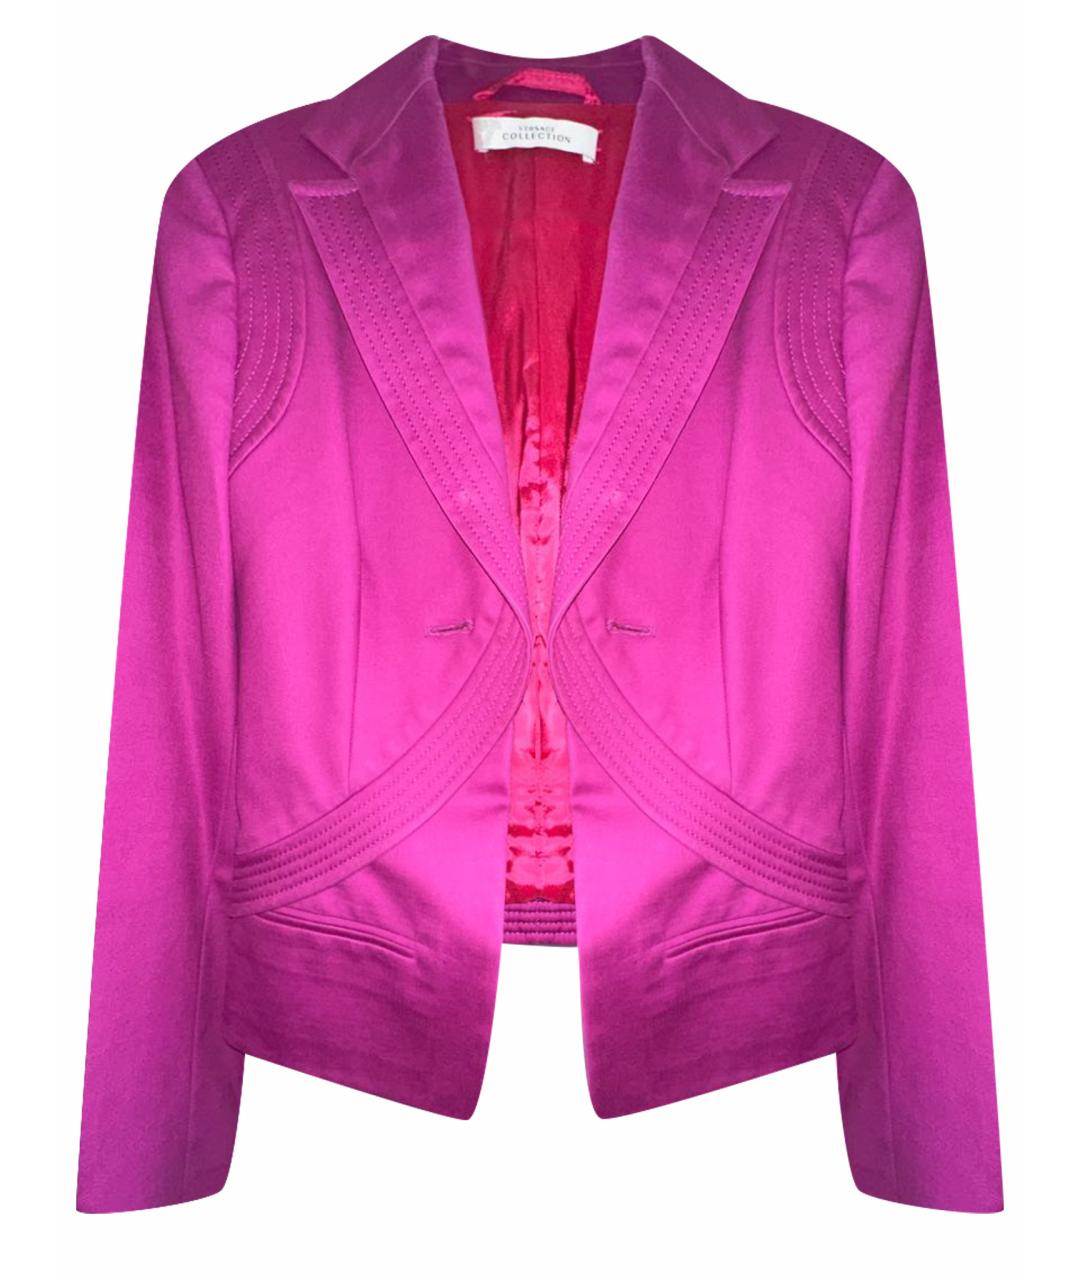 VERSACE COLLECTION Розовый хлопковый жакет/пиджак, фото 1